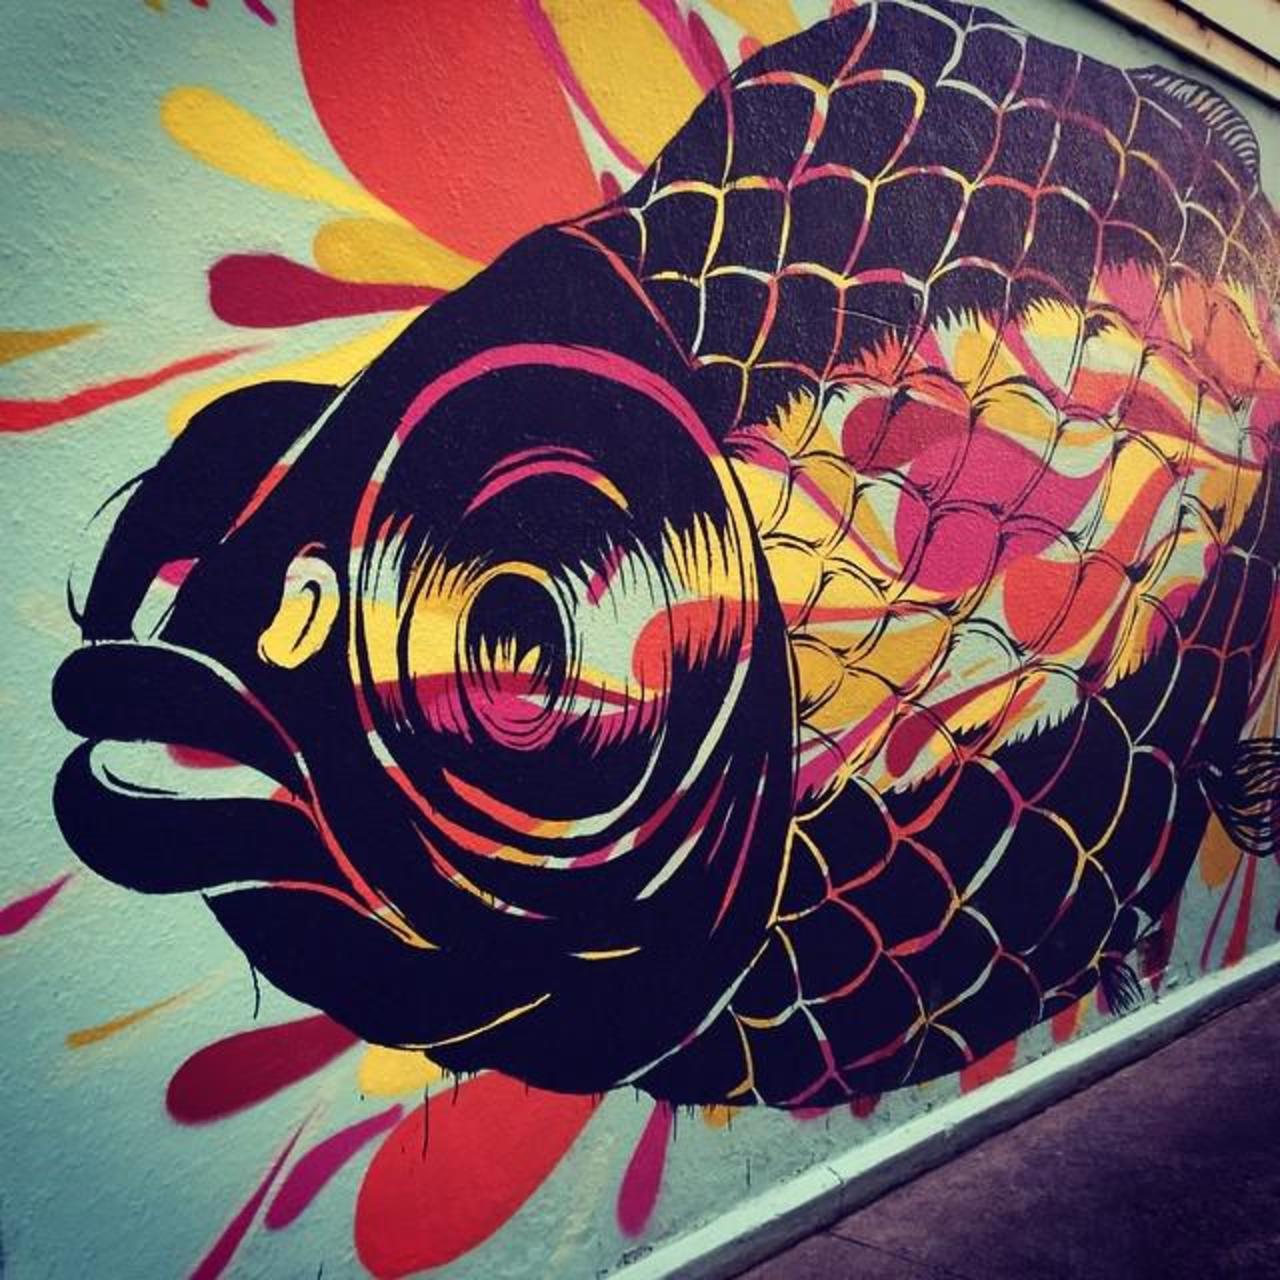 #fishy #streetart #graff #graffiti #burncity #igersmelbourne #mural #Warrnambool http://ift.tt/1FxaBpc http://t.co/QsW0GS0scX